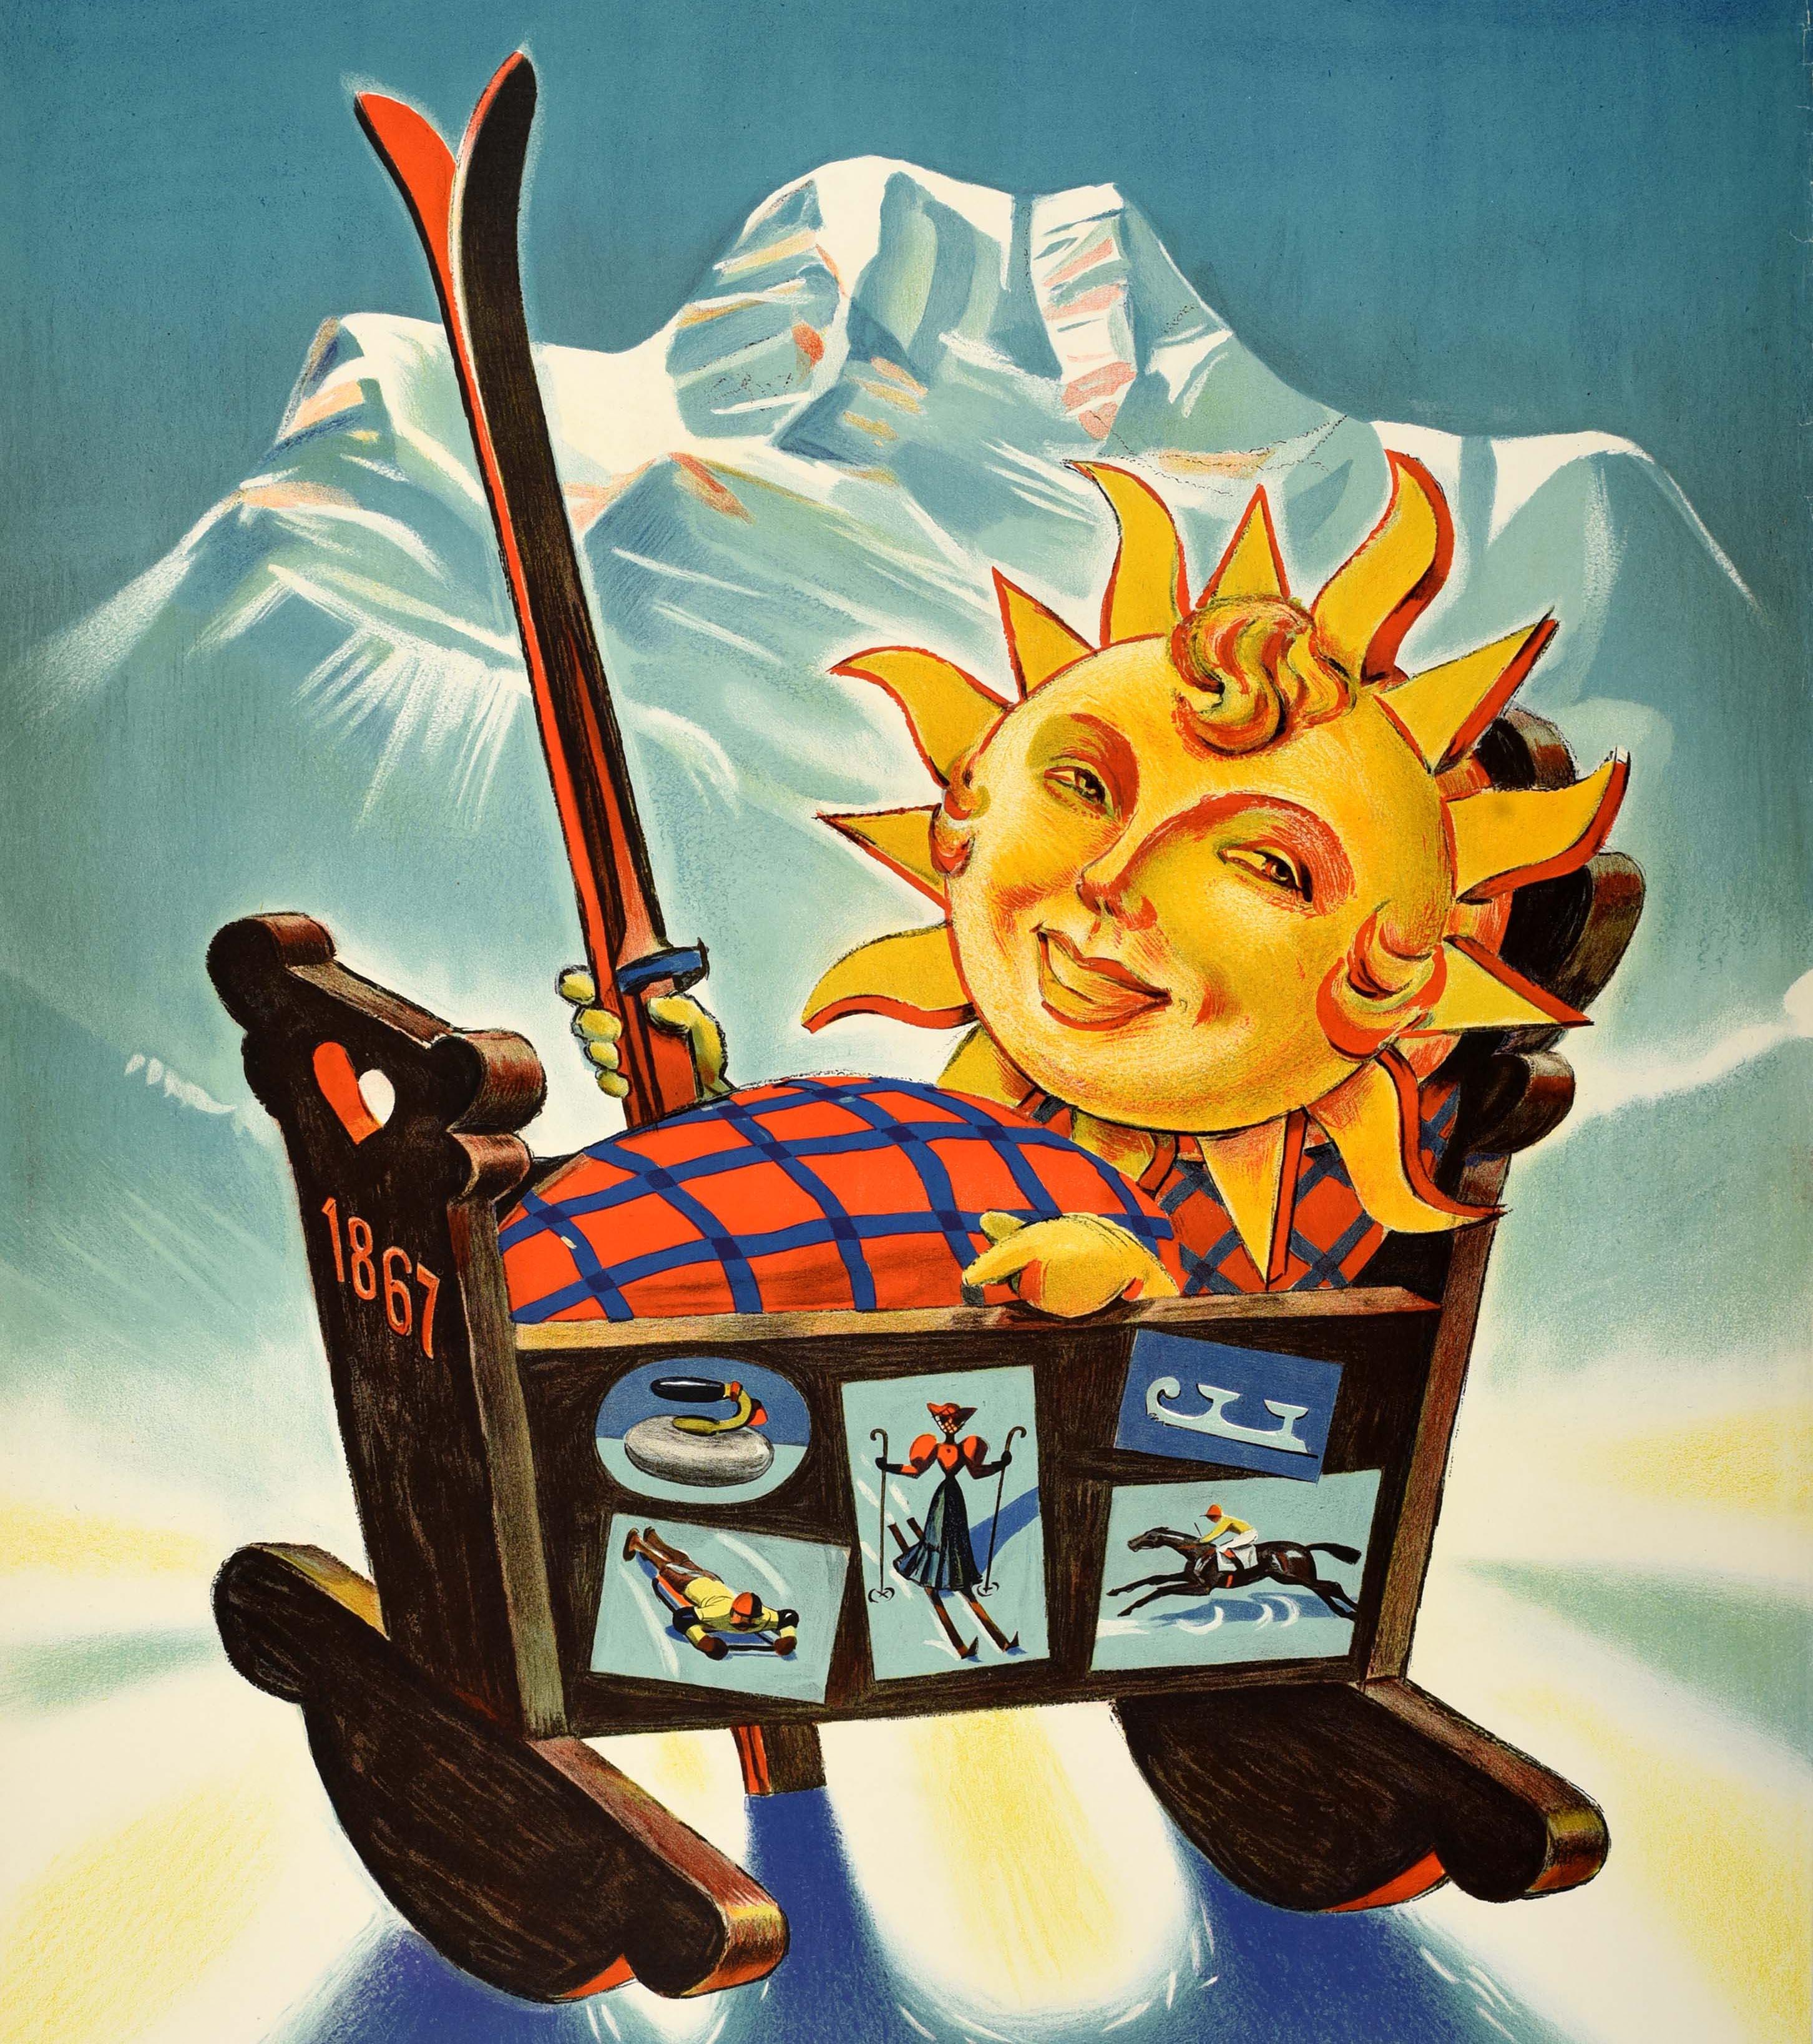 Affiche originale de voyage pour les sports d'hiver à St Moritz, avec un superbe dessin de Hugo Laubi (1888-1959) représentant le logo du soleil souriant de St Moritz sous la forme d'un bébé aux cheveux bouclés couché dans un berceau en bois et